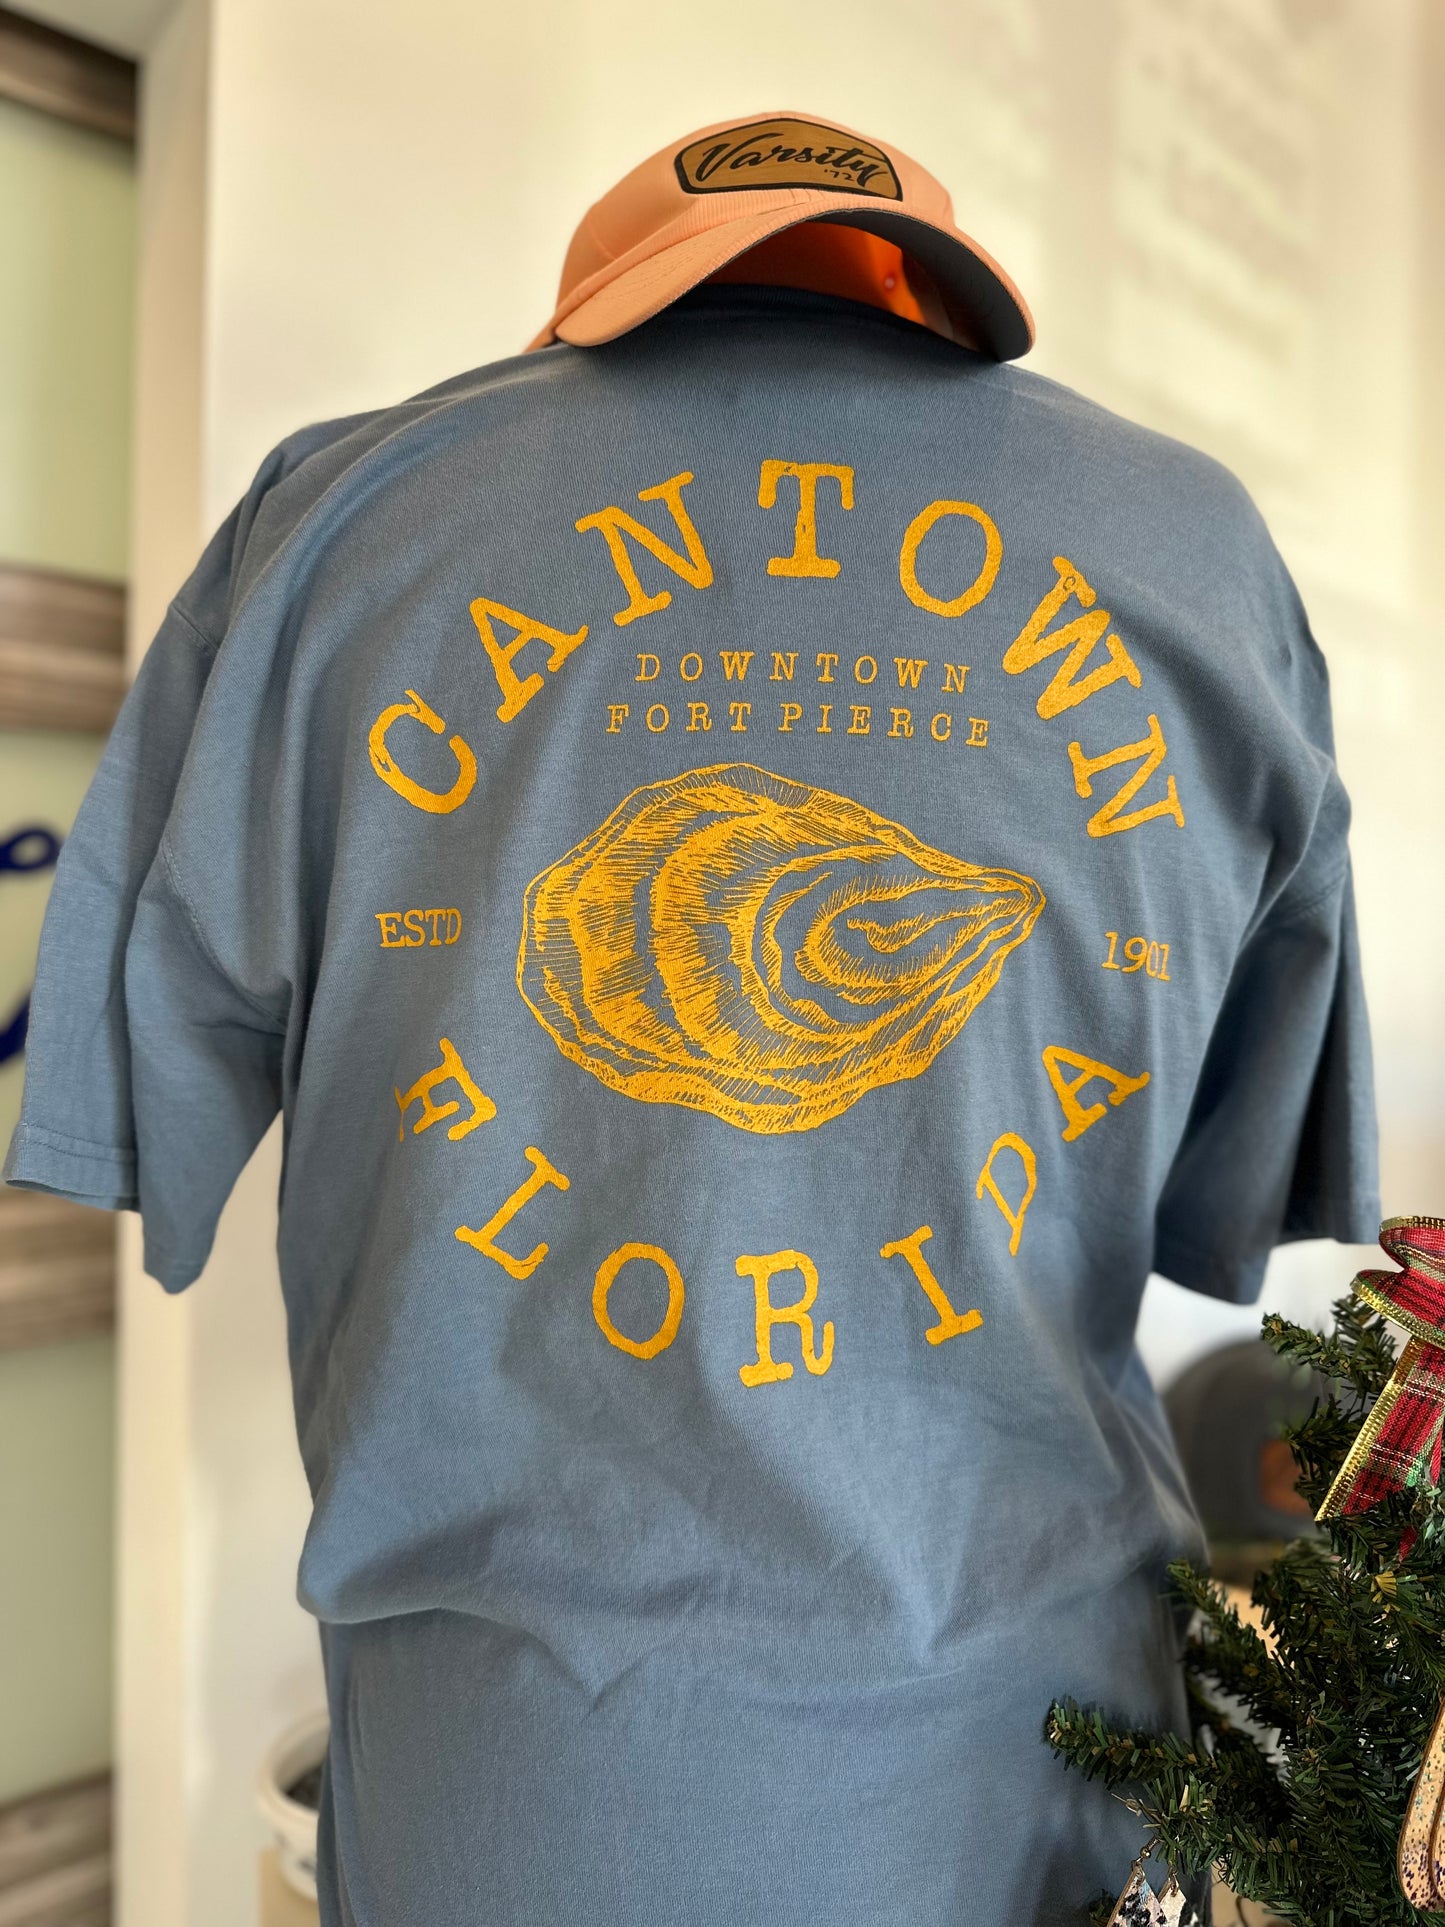 Cantown Fort Pierce Shirt